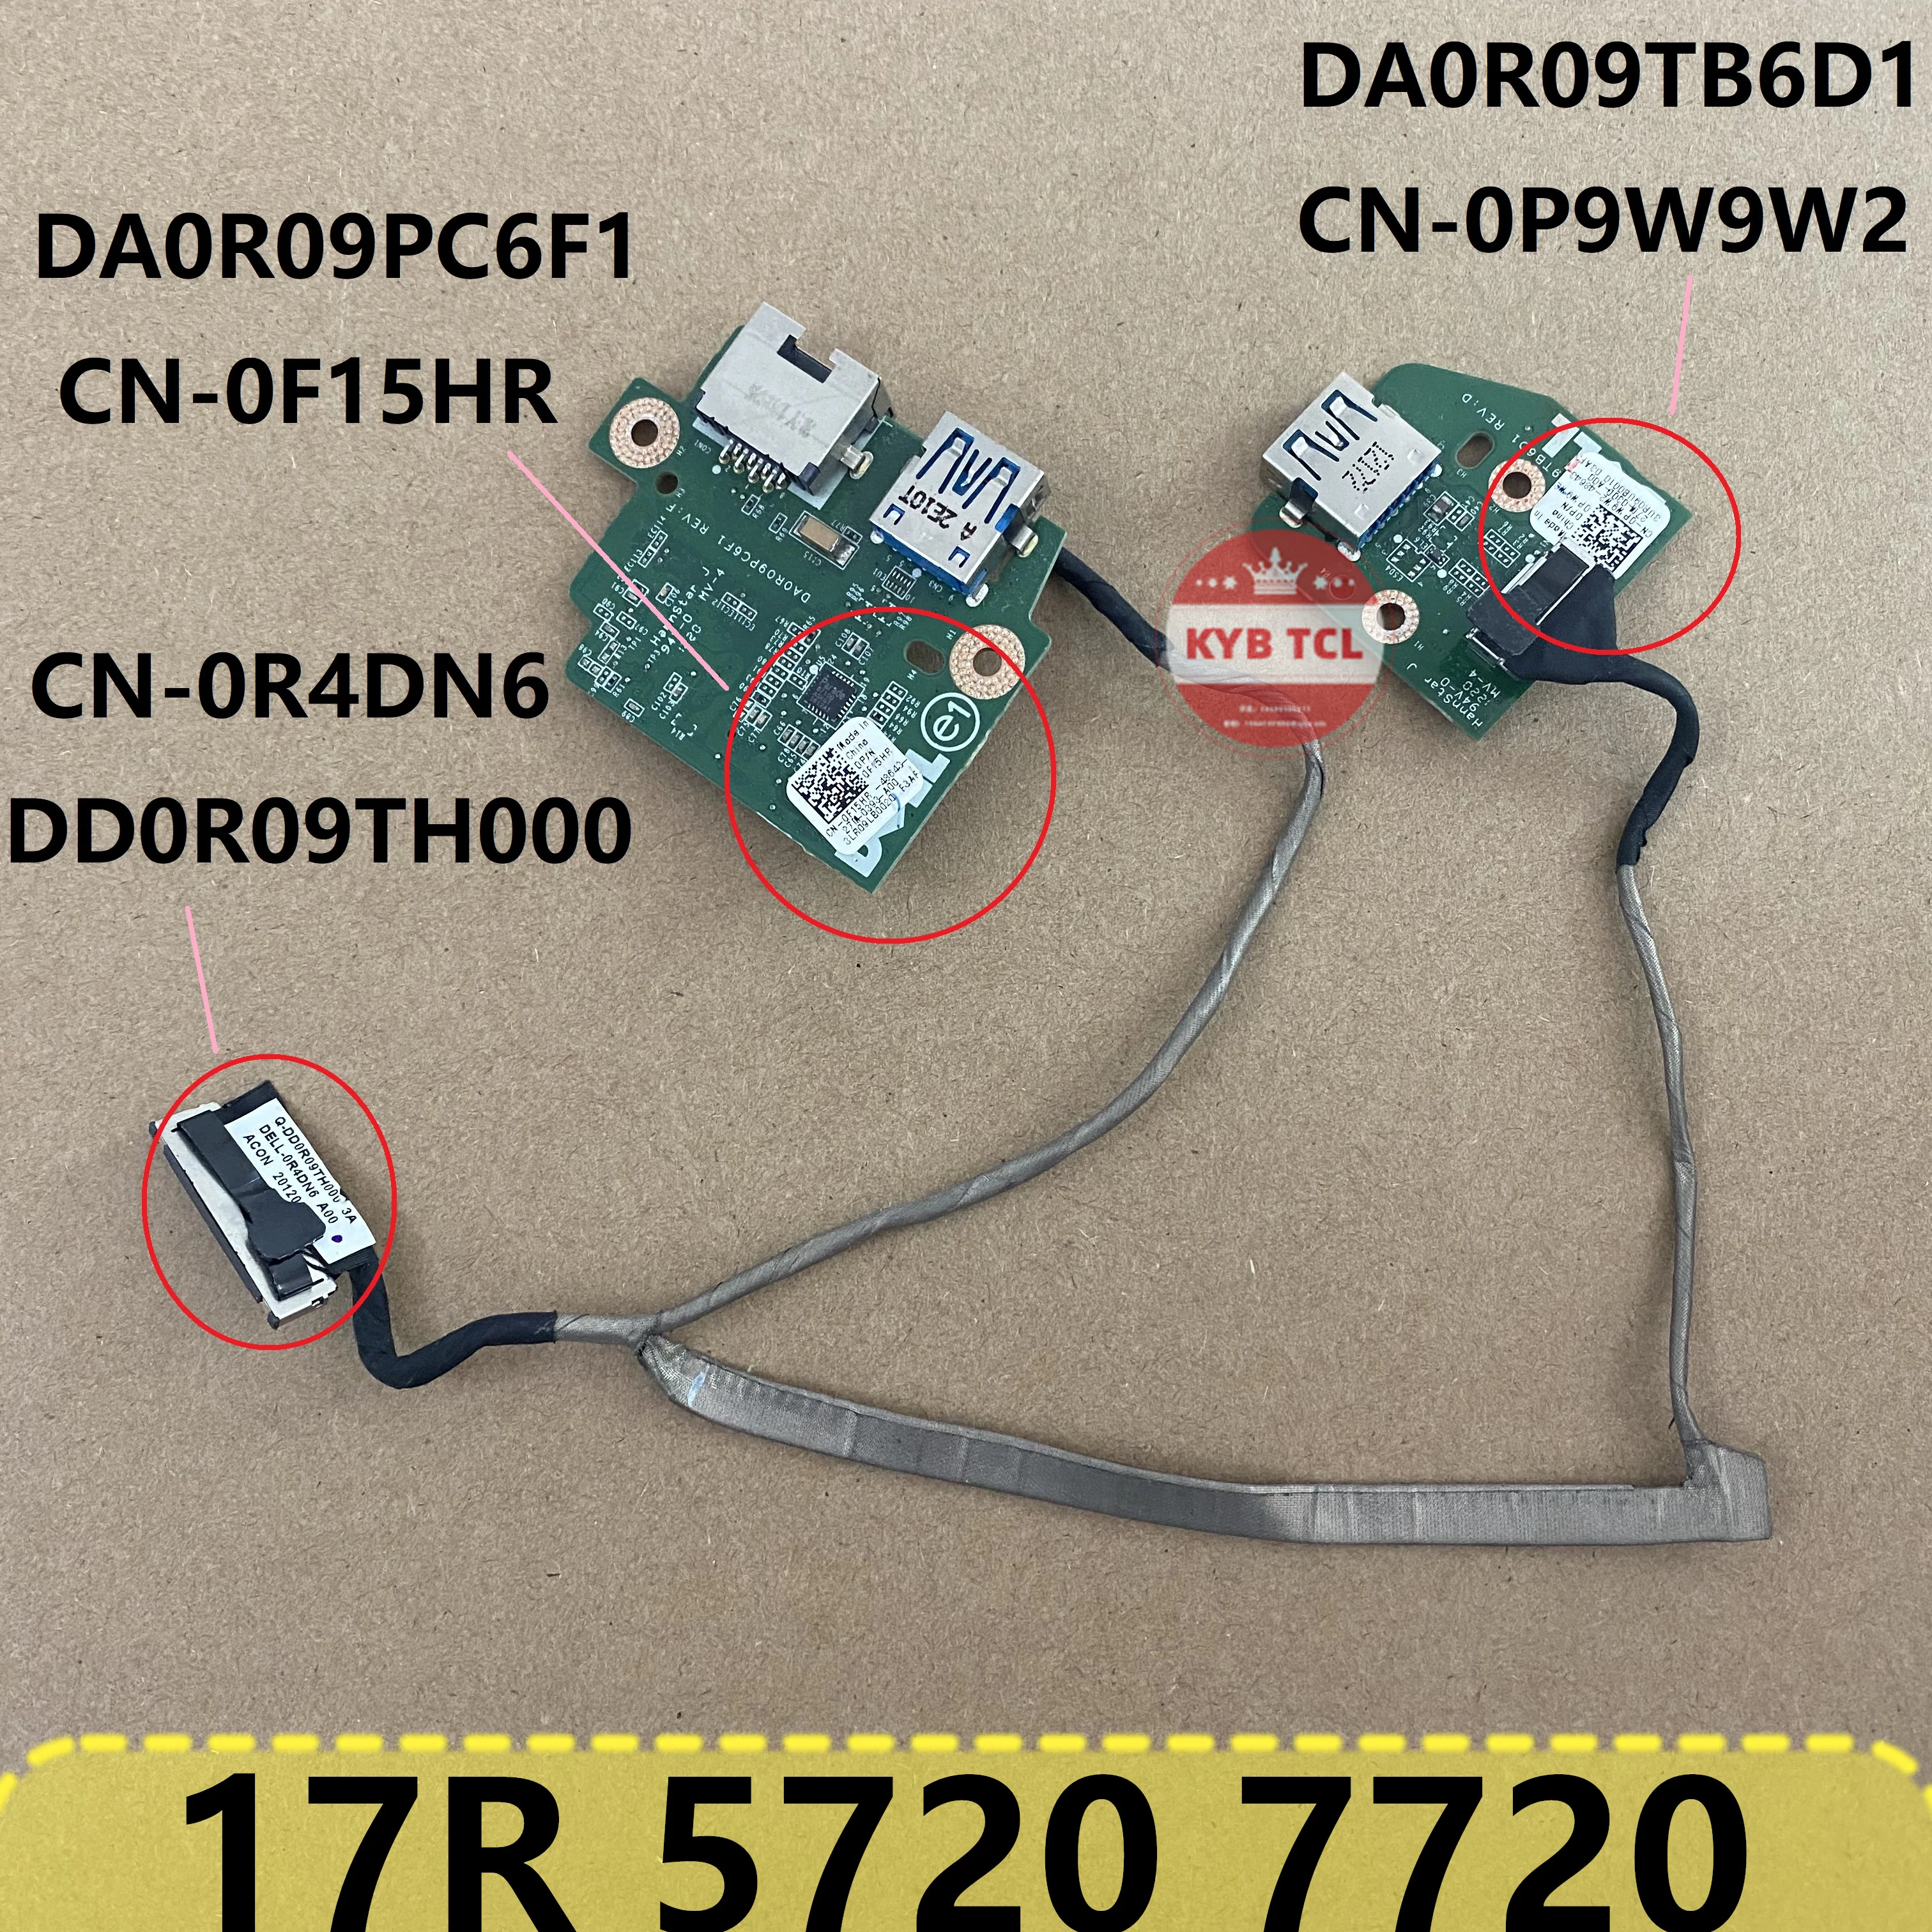 

Оригинальный ноутбук 3.0 USB Switch Board + кабель PW9W2 F15HR R4DN6 DA0R09PC6F1 DELL Inspiron 17R 5720 7720 Ноутбук DA0R09TB6D1 0PW9W2 0F15HR 0R4DN6 CN-0PW9W2 CN-0F15HR CN-0R4DN6